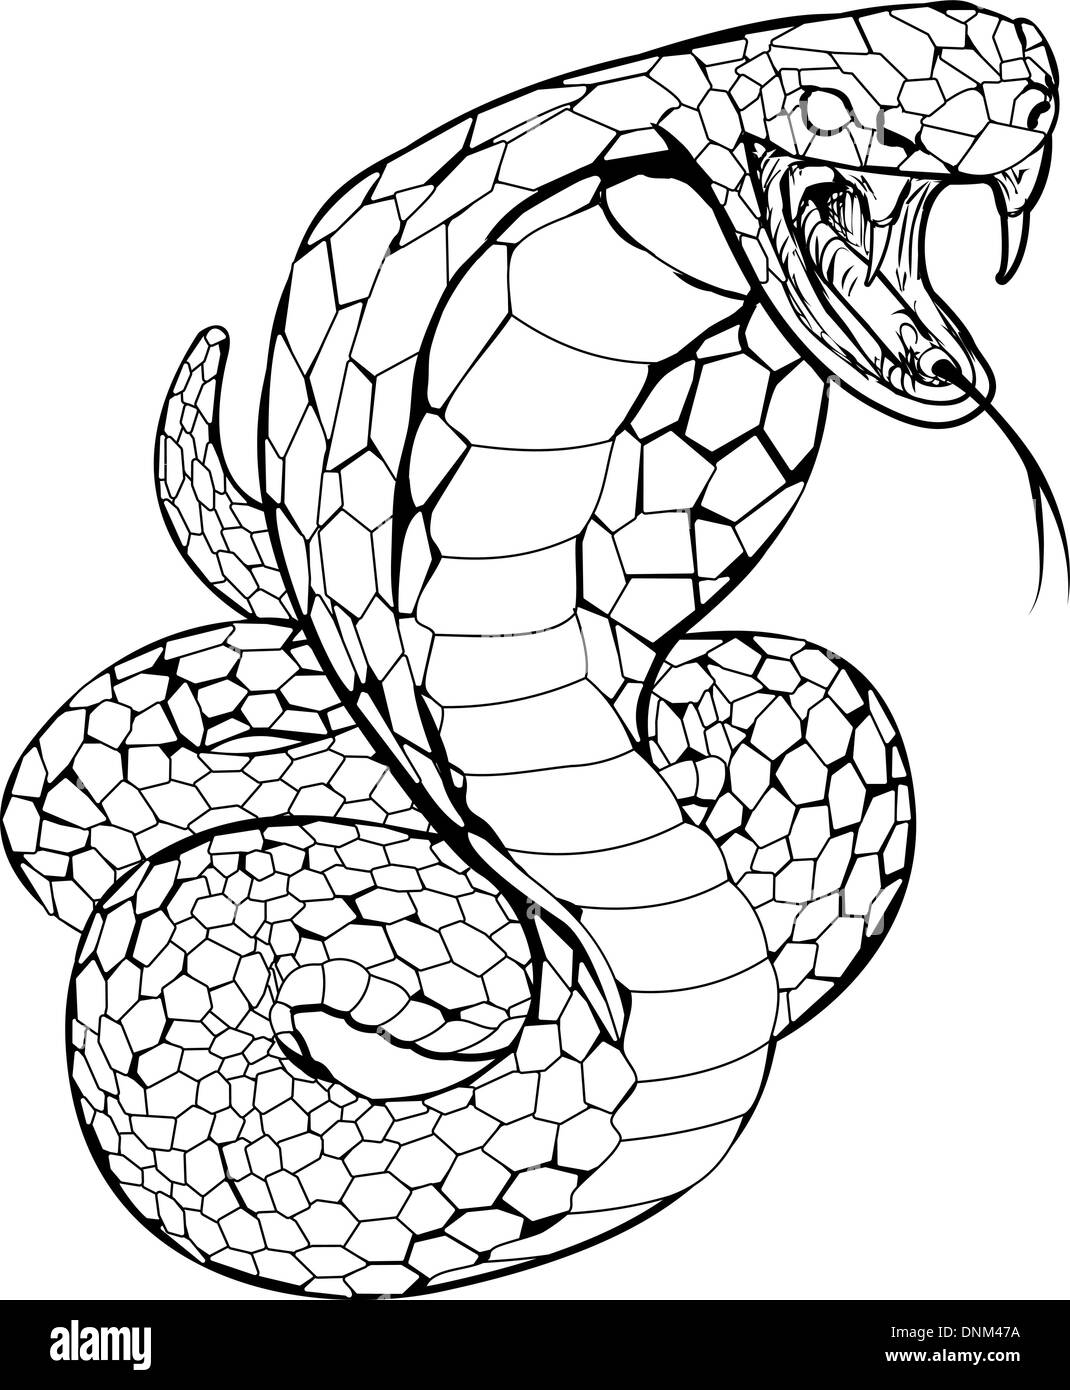 Schwarz / weiß Darstellung einer Kobra Schlange Streik wird vorbereitet Stock Vektor